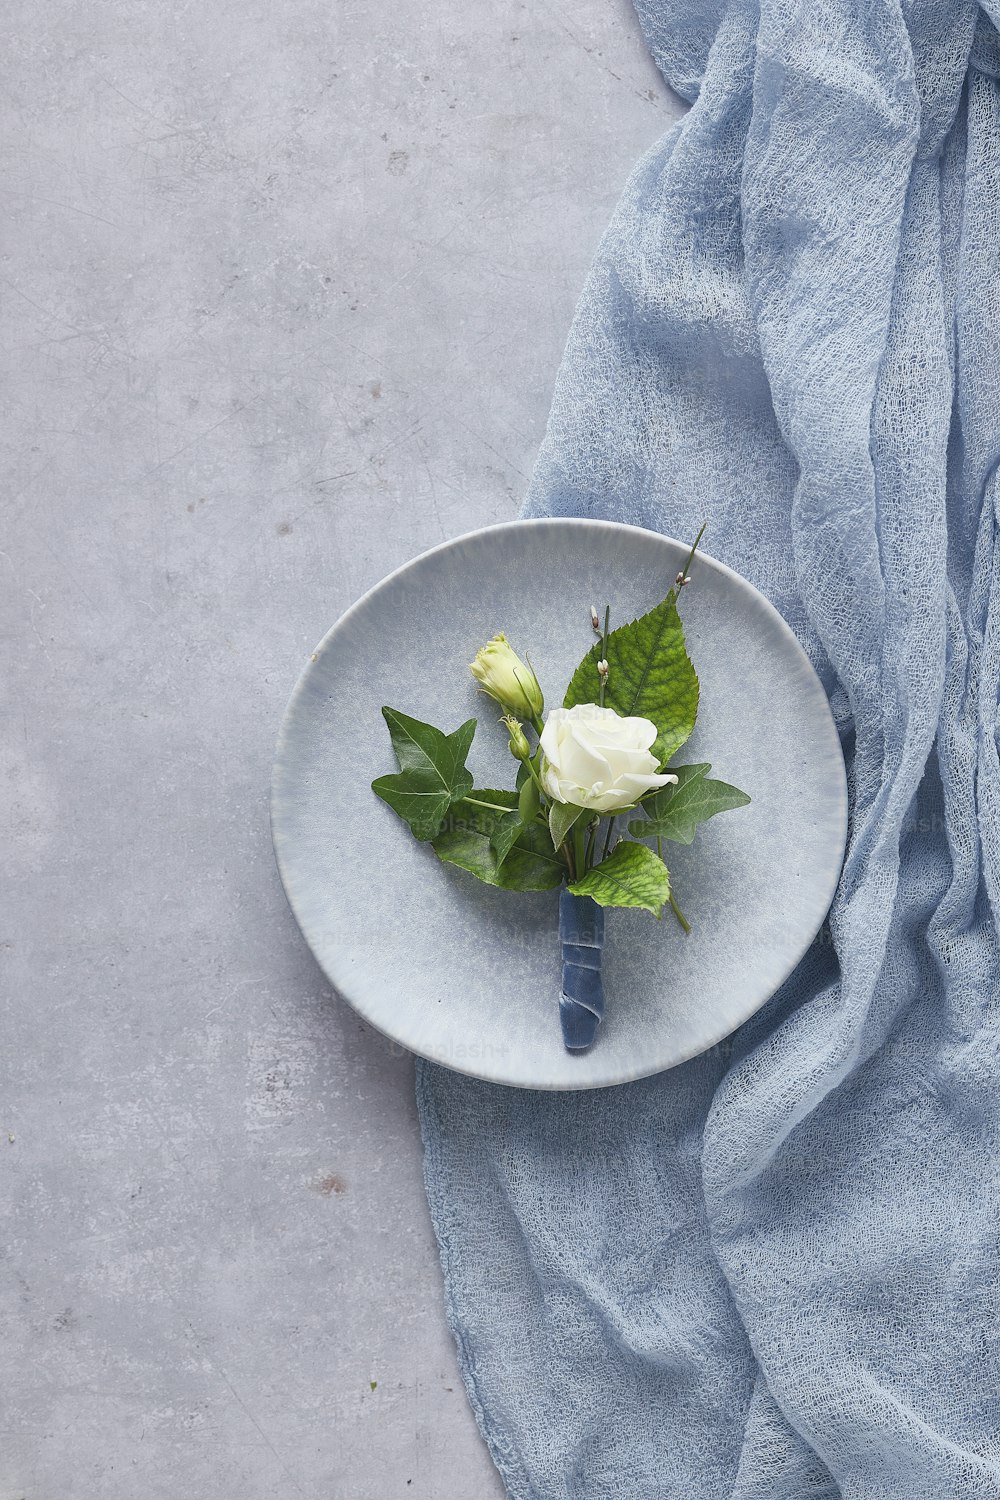 eine weiße Rose auf einem Teller auf einem blauen Tuch